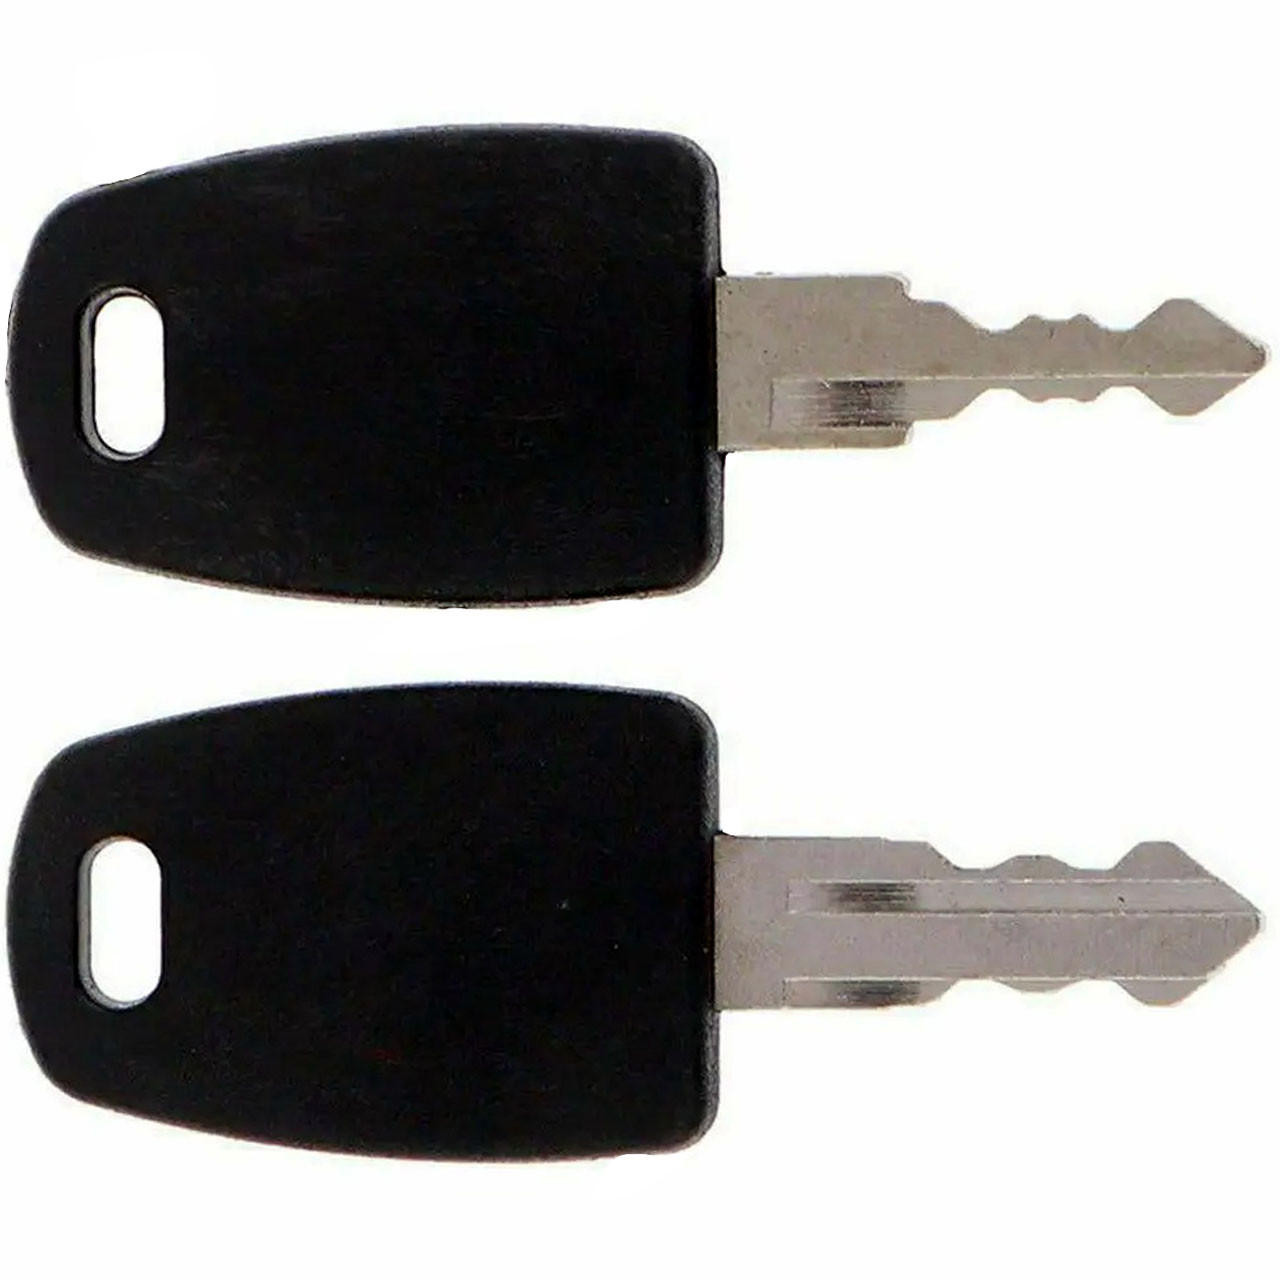 TSA Lock Key - Open TSA approved locks with ease. TSA 002 & 007 [Buy Now]